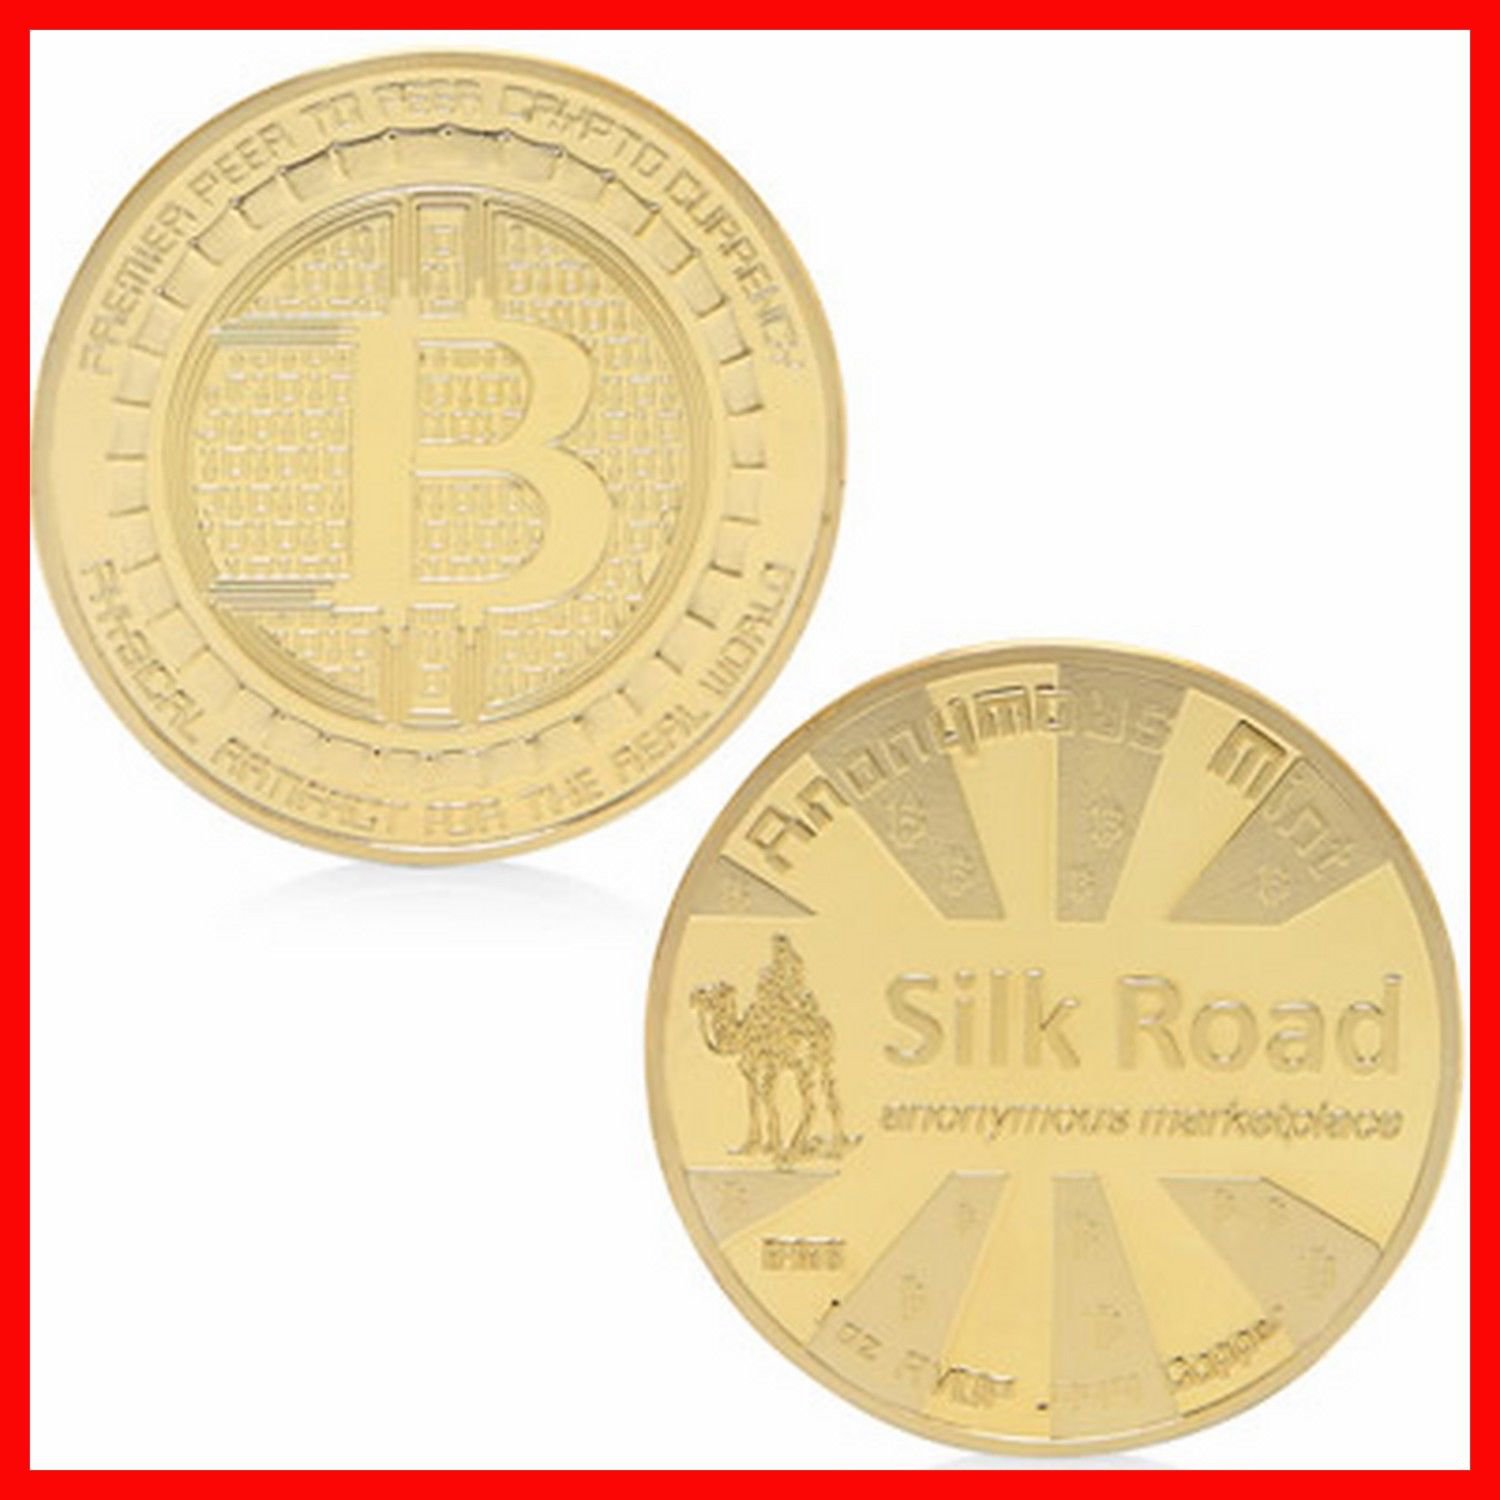 silk road bitcoin